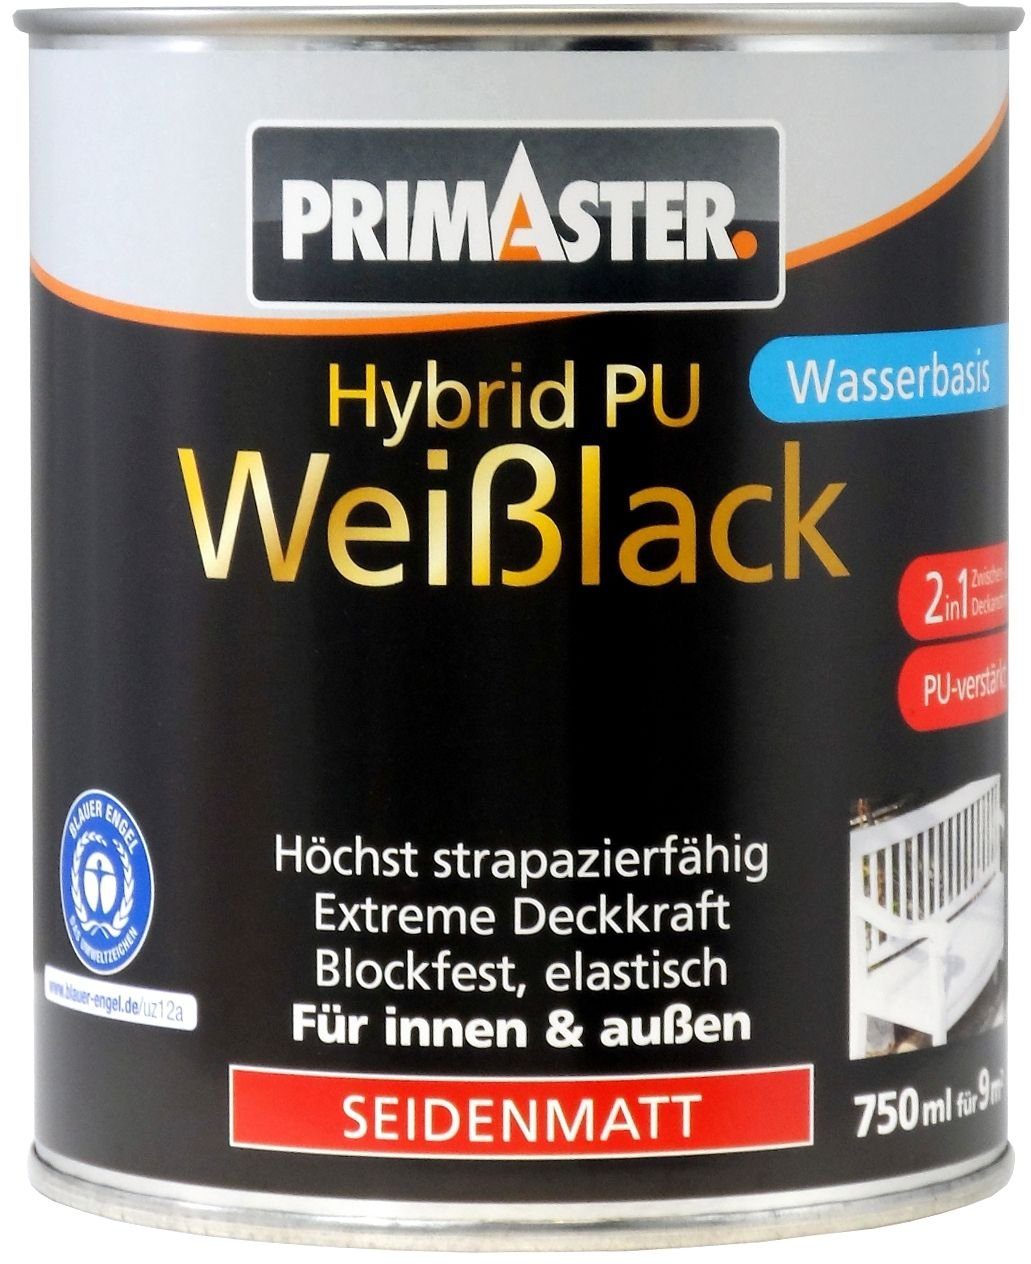 Hybrid-PU-Weißlack 750 Weißlack Primaster ml seidenmatt Primaster